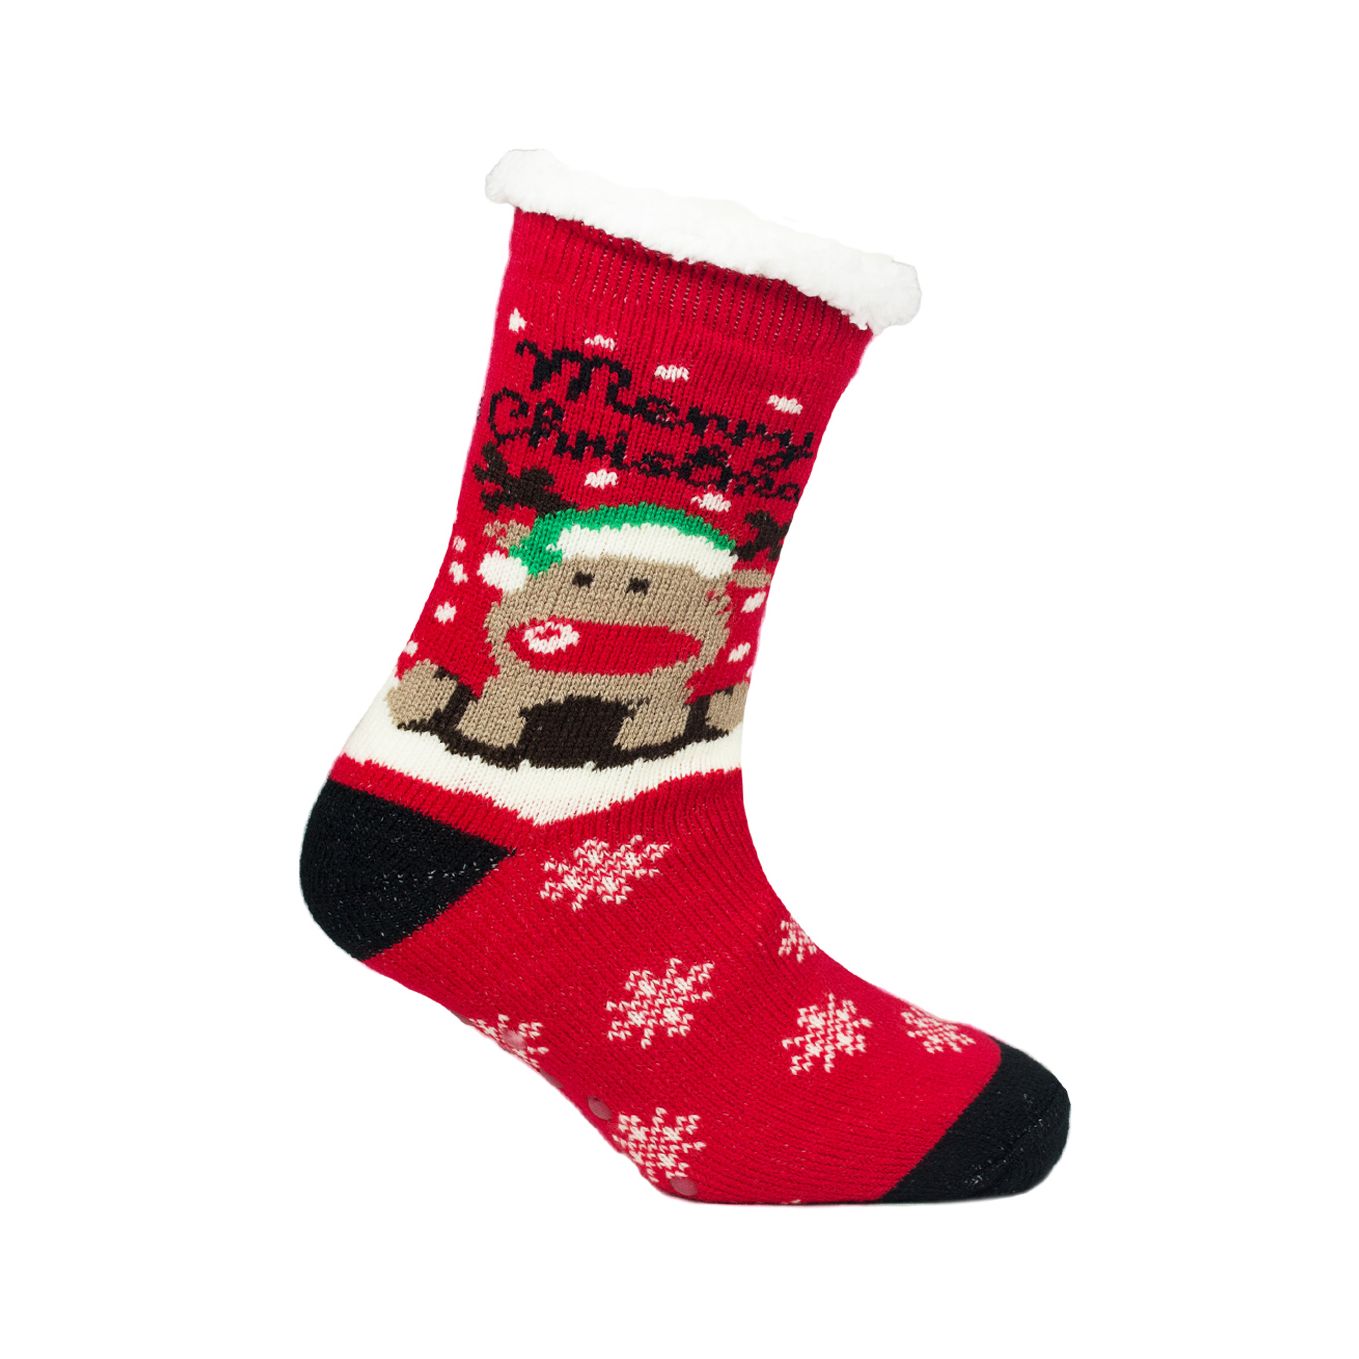 Ladies Novelty Christmas Fleece Lined Slipper Socks